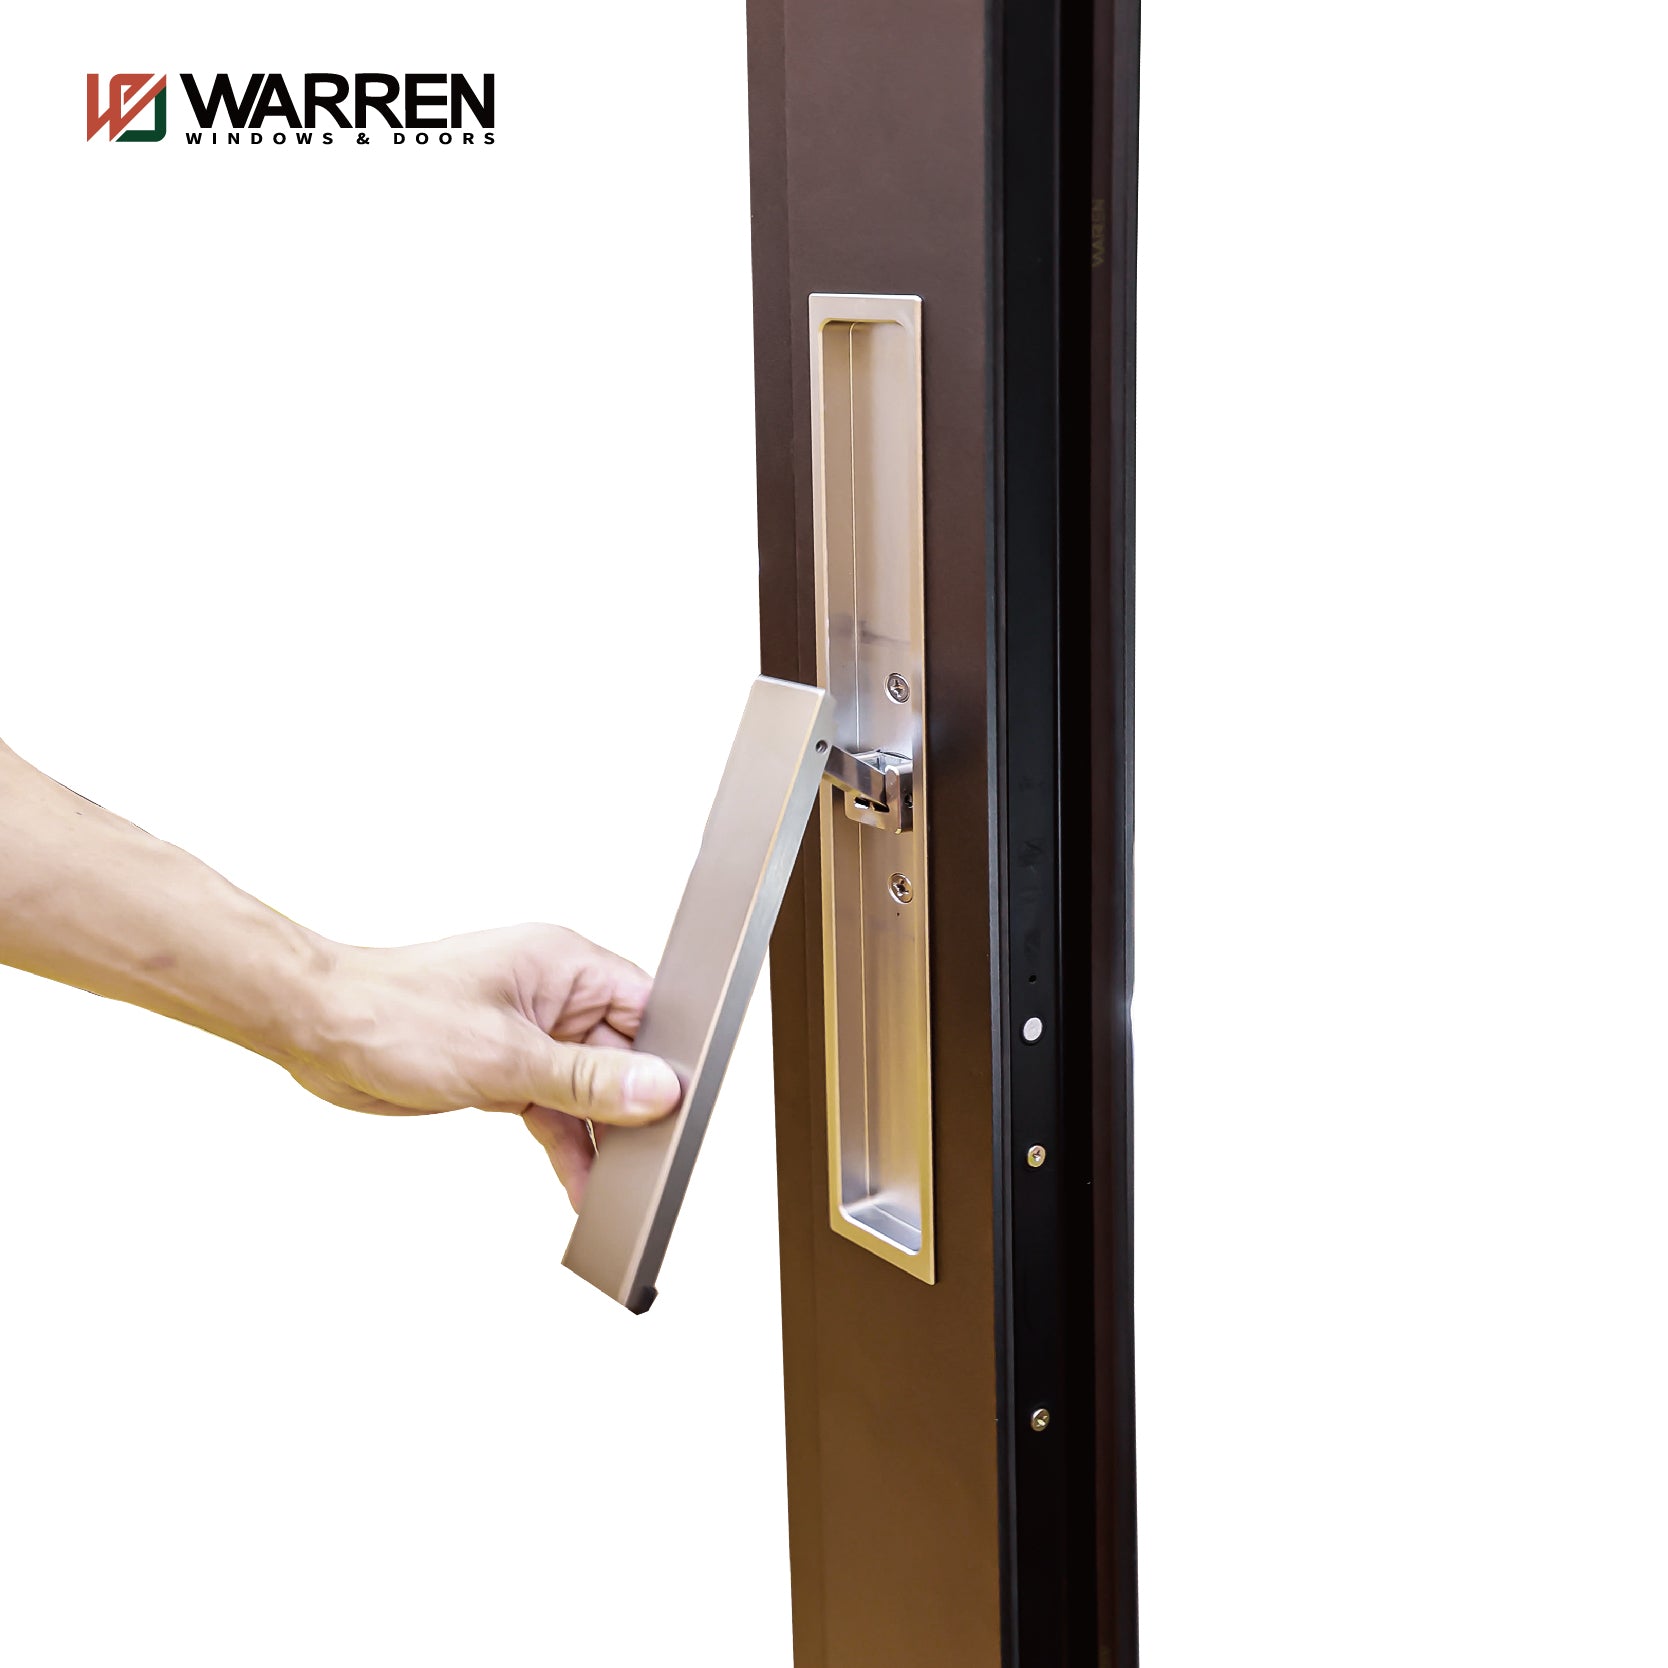 Warren High Quality Factory Sale Slide Door Double Glass Stacking Aluminum Sliding Door System